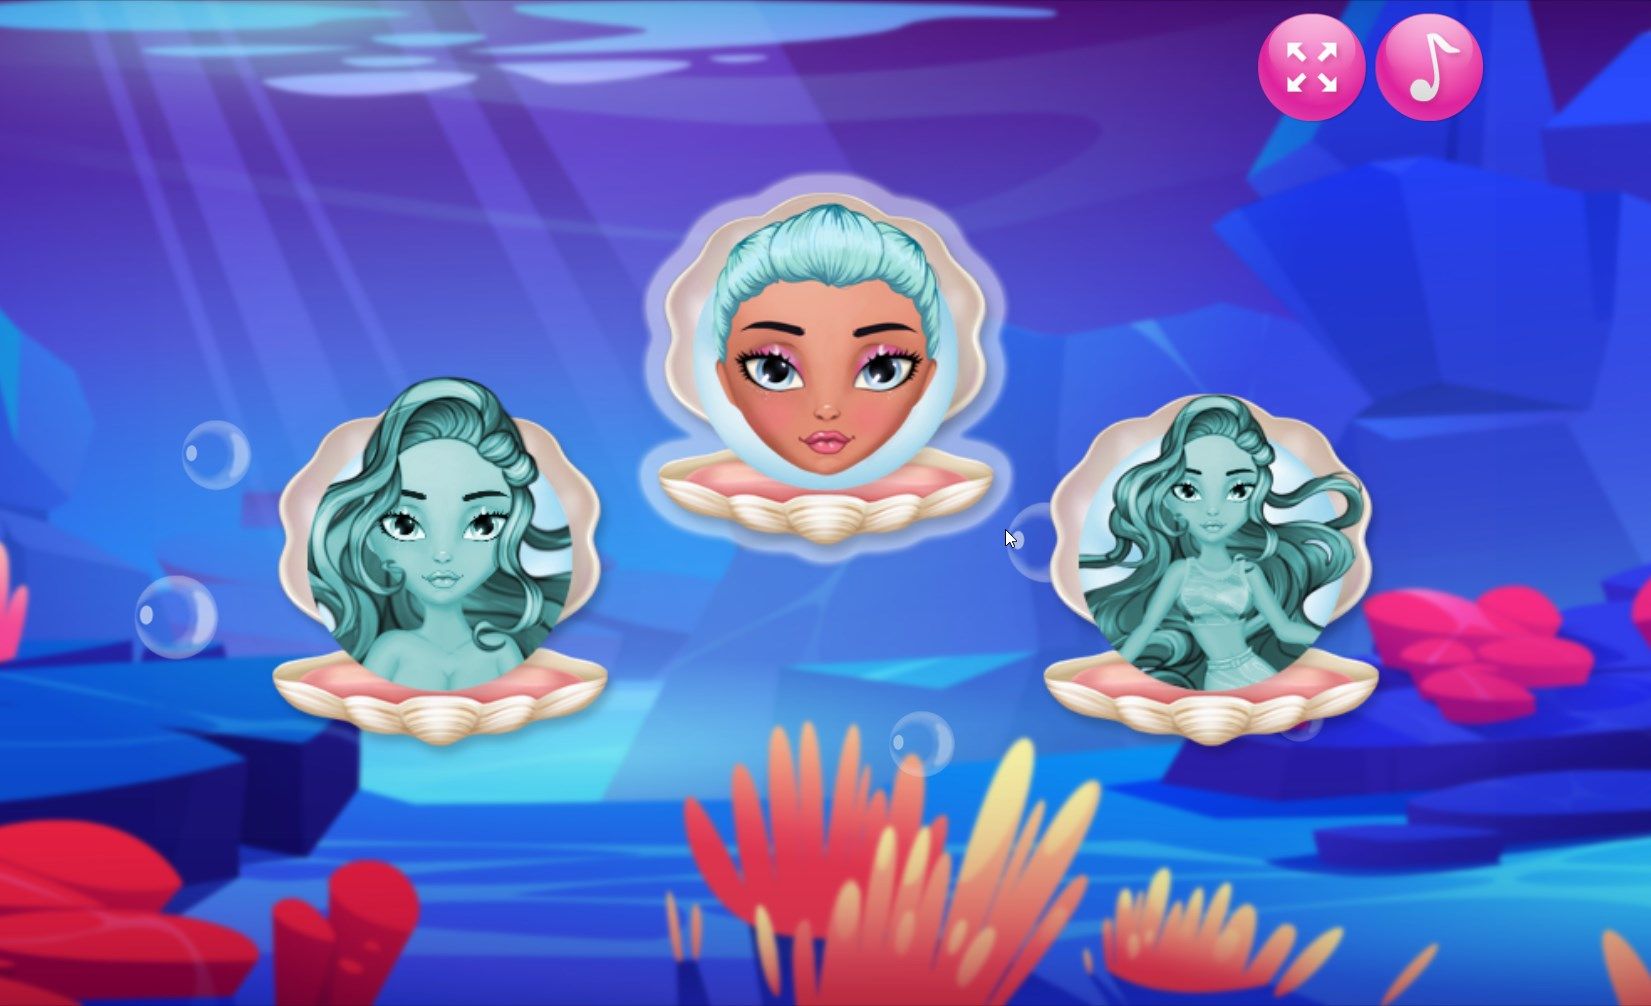 Diamond Mermaids